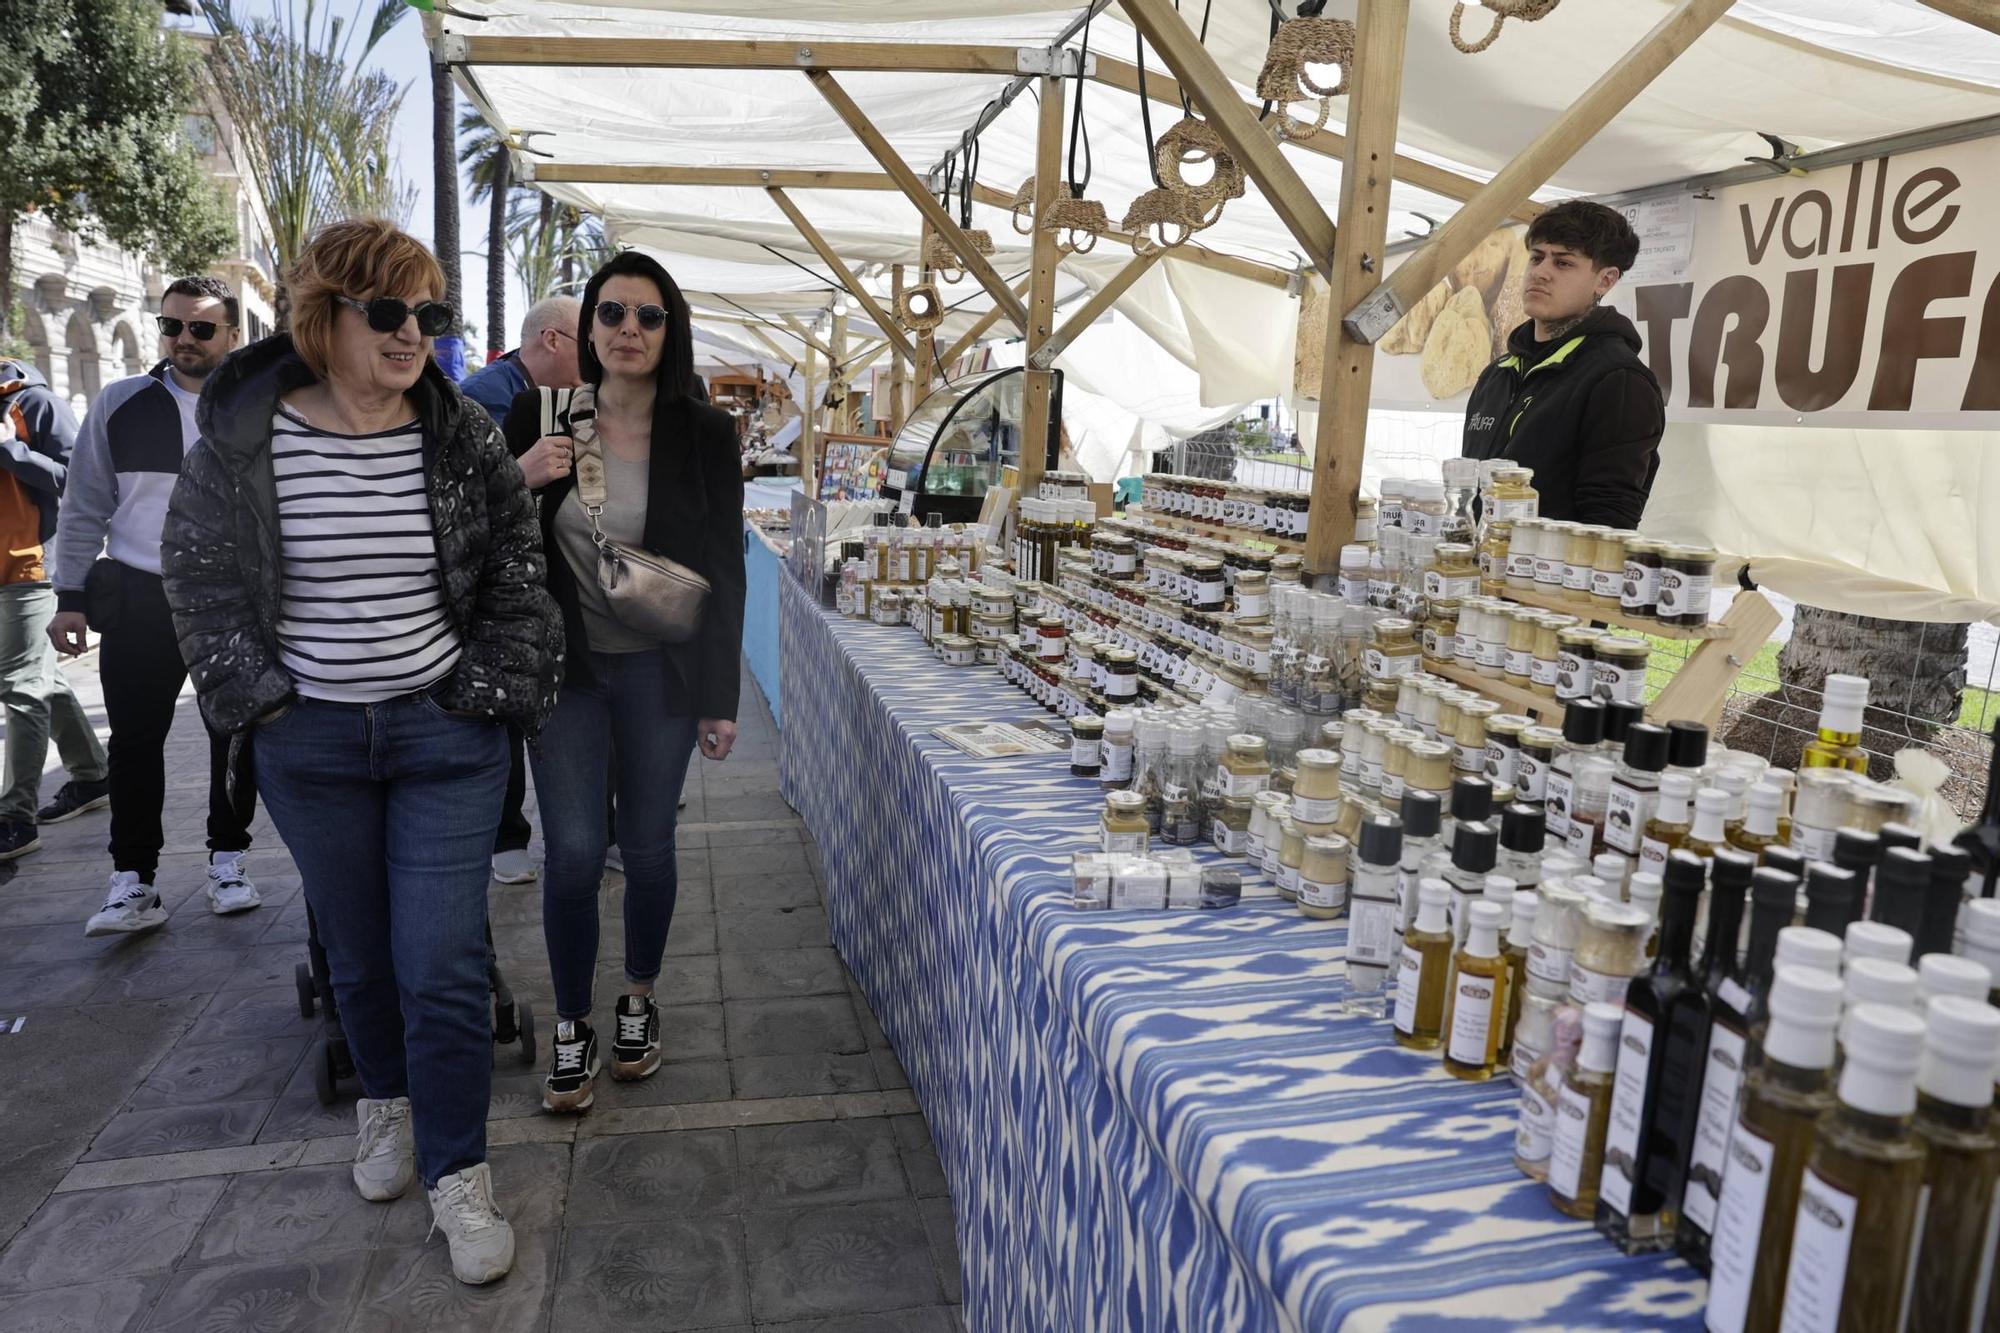 Caluroso arranque del Mercado de les Illes Balears